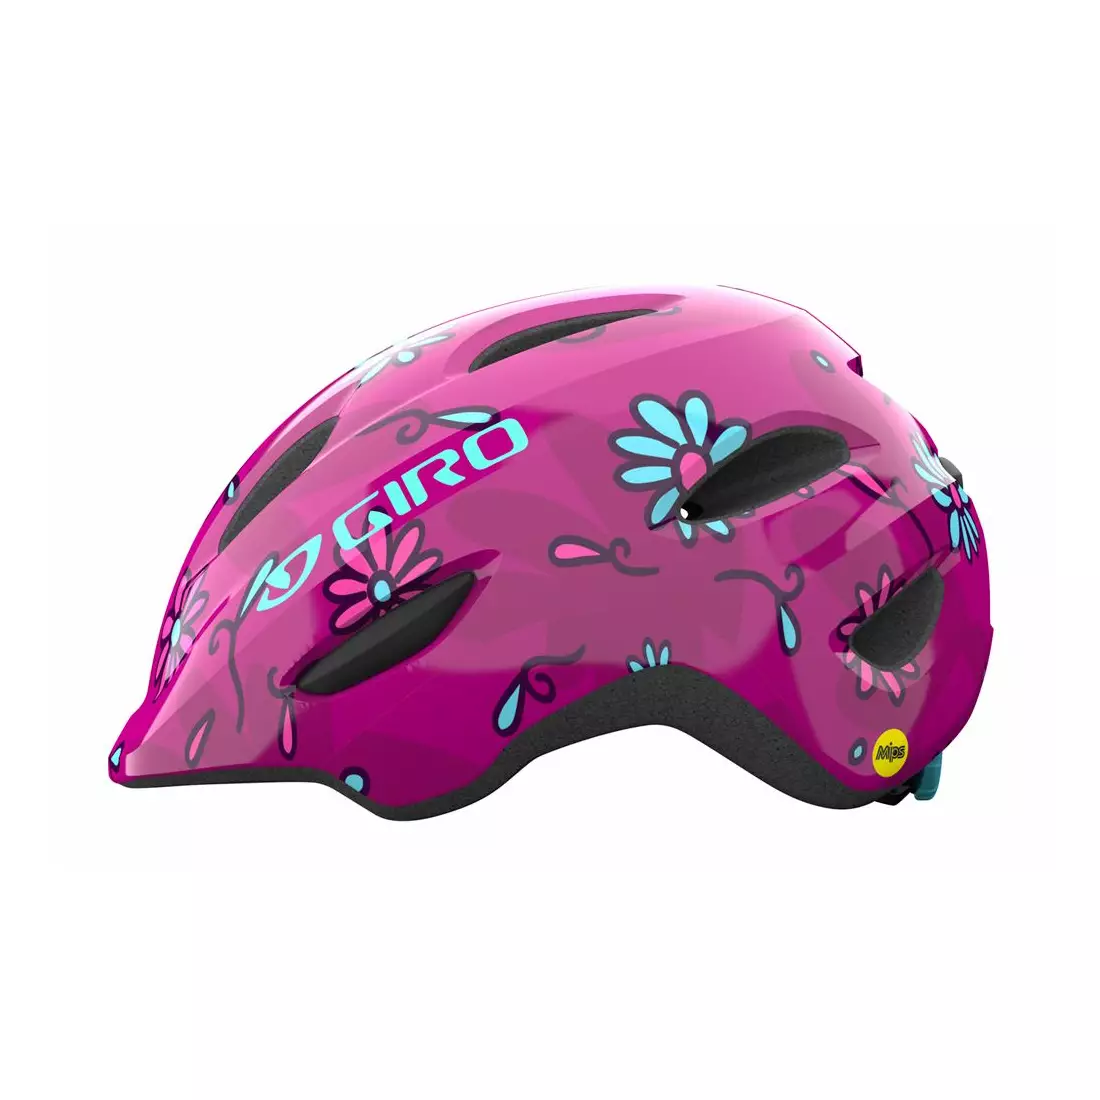 GIRO dětská / juniorská cyklistická přilba SCAMP INTEGRATED MIPS pink street daisies GR-7129865